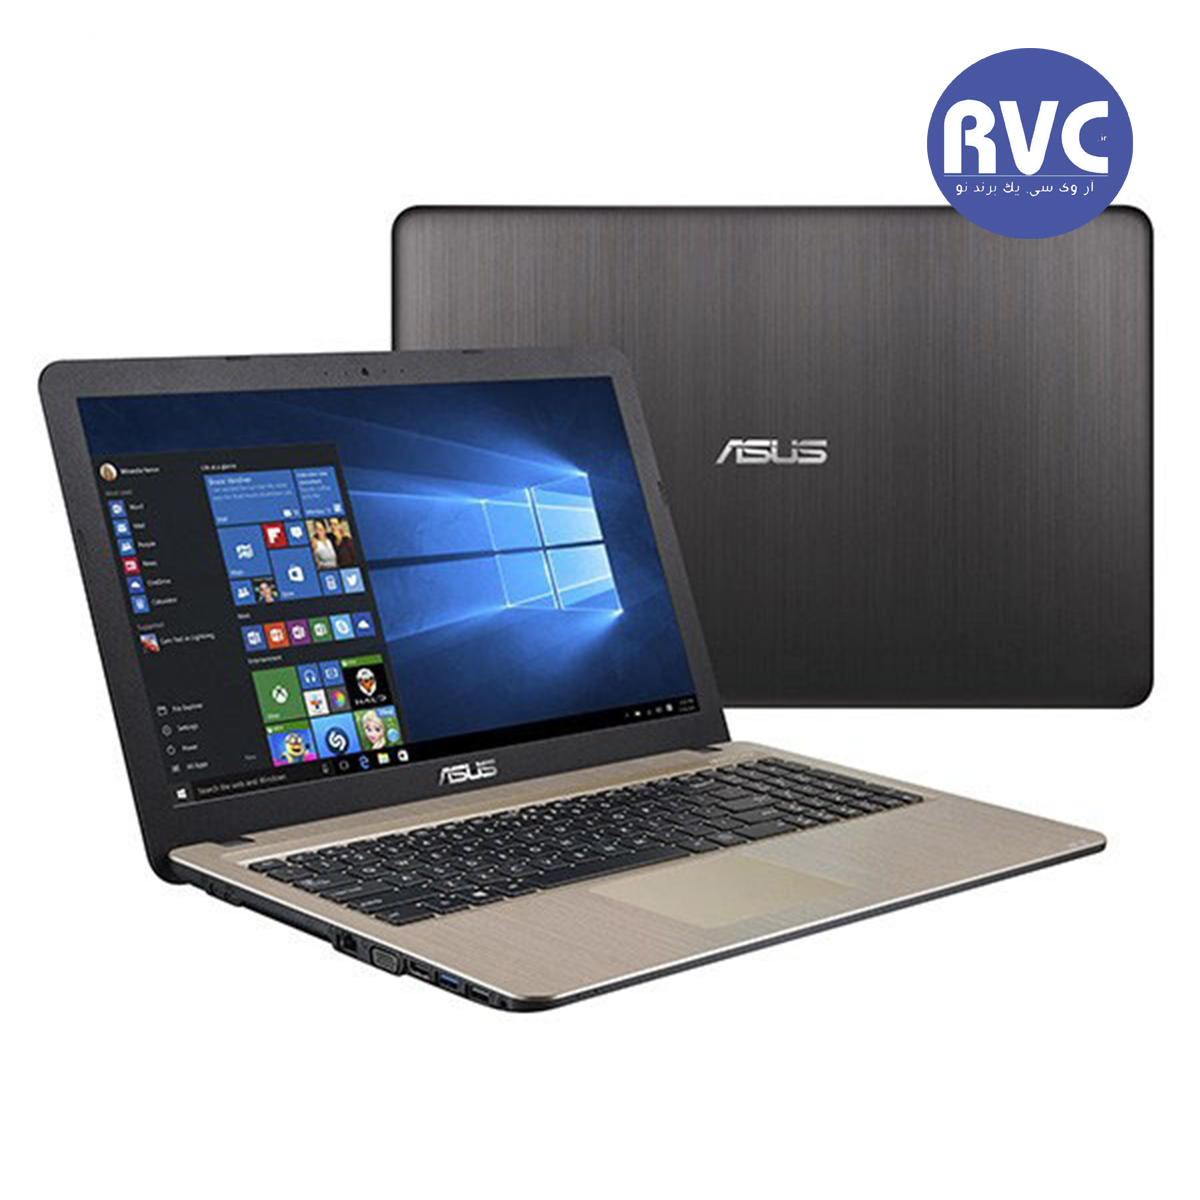 ASUS A540UP - I7(7500U)-8GB-1TB-2GB-FULLHD